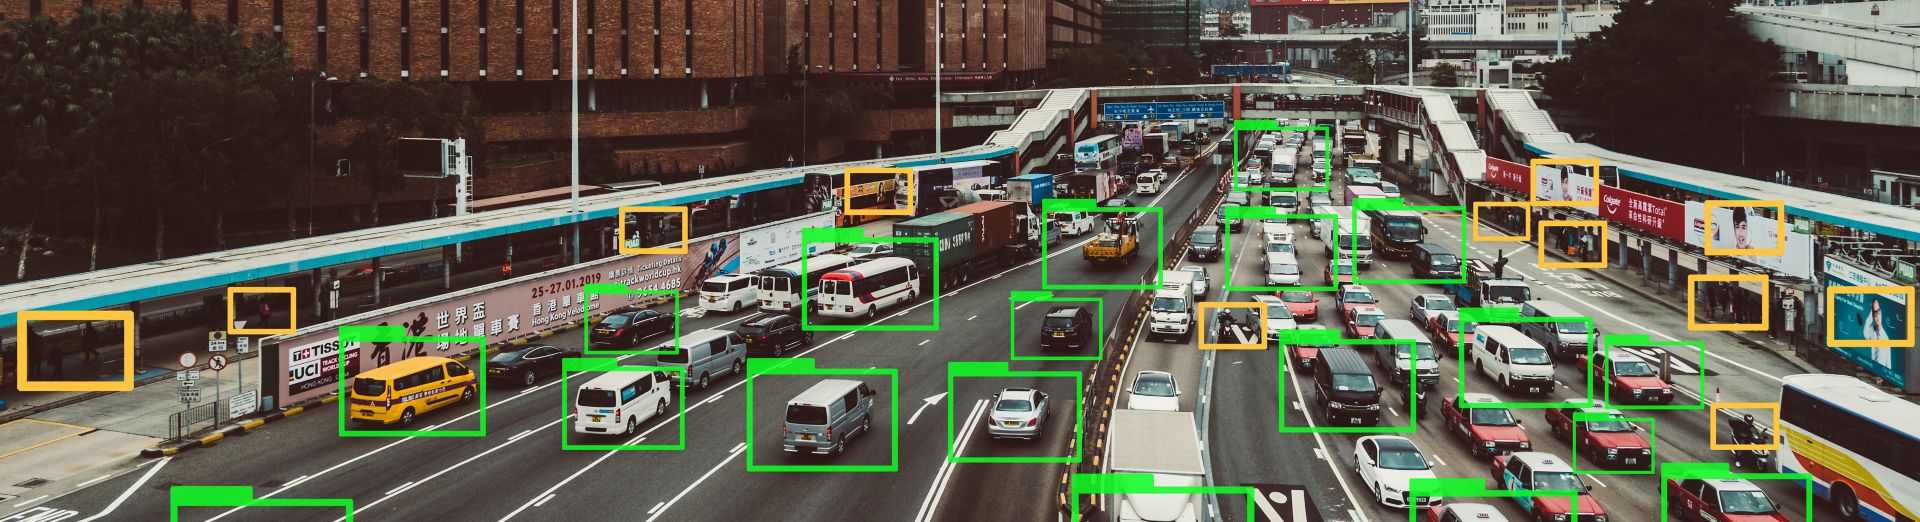 Technologie de Machine Learning assurant le suivi de voitures sur une autoroute